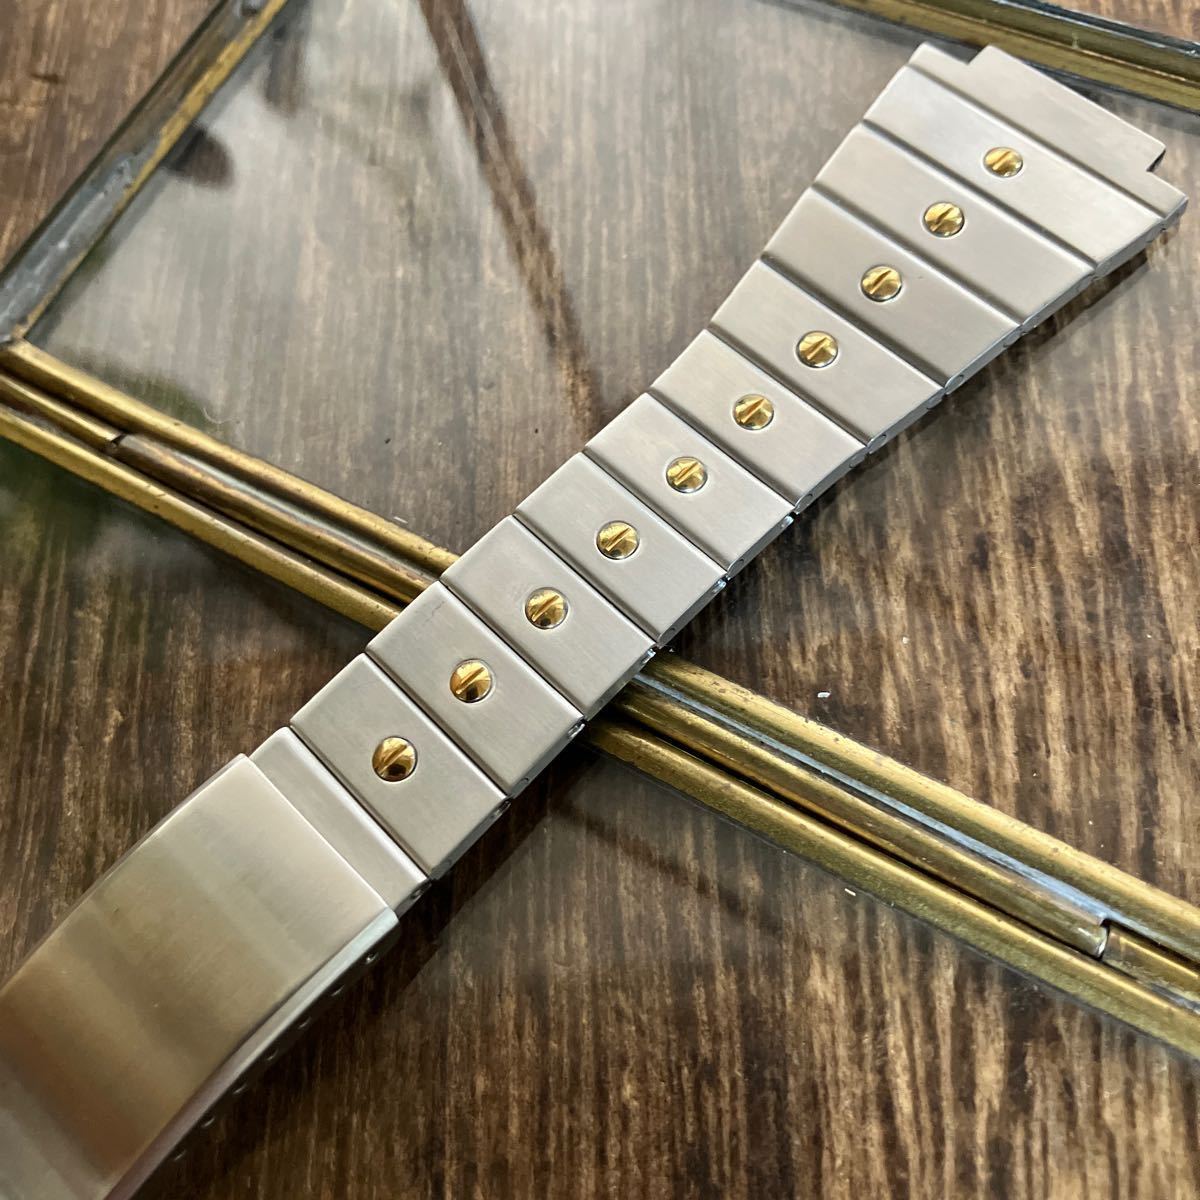 18mm/27mm серебряный цвет золотой цвет винт часы частота часы ремень металл б/у товар 